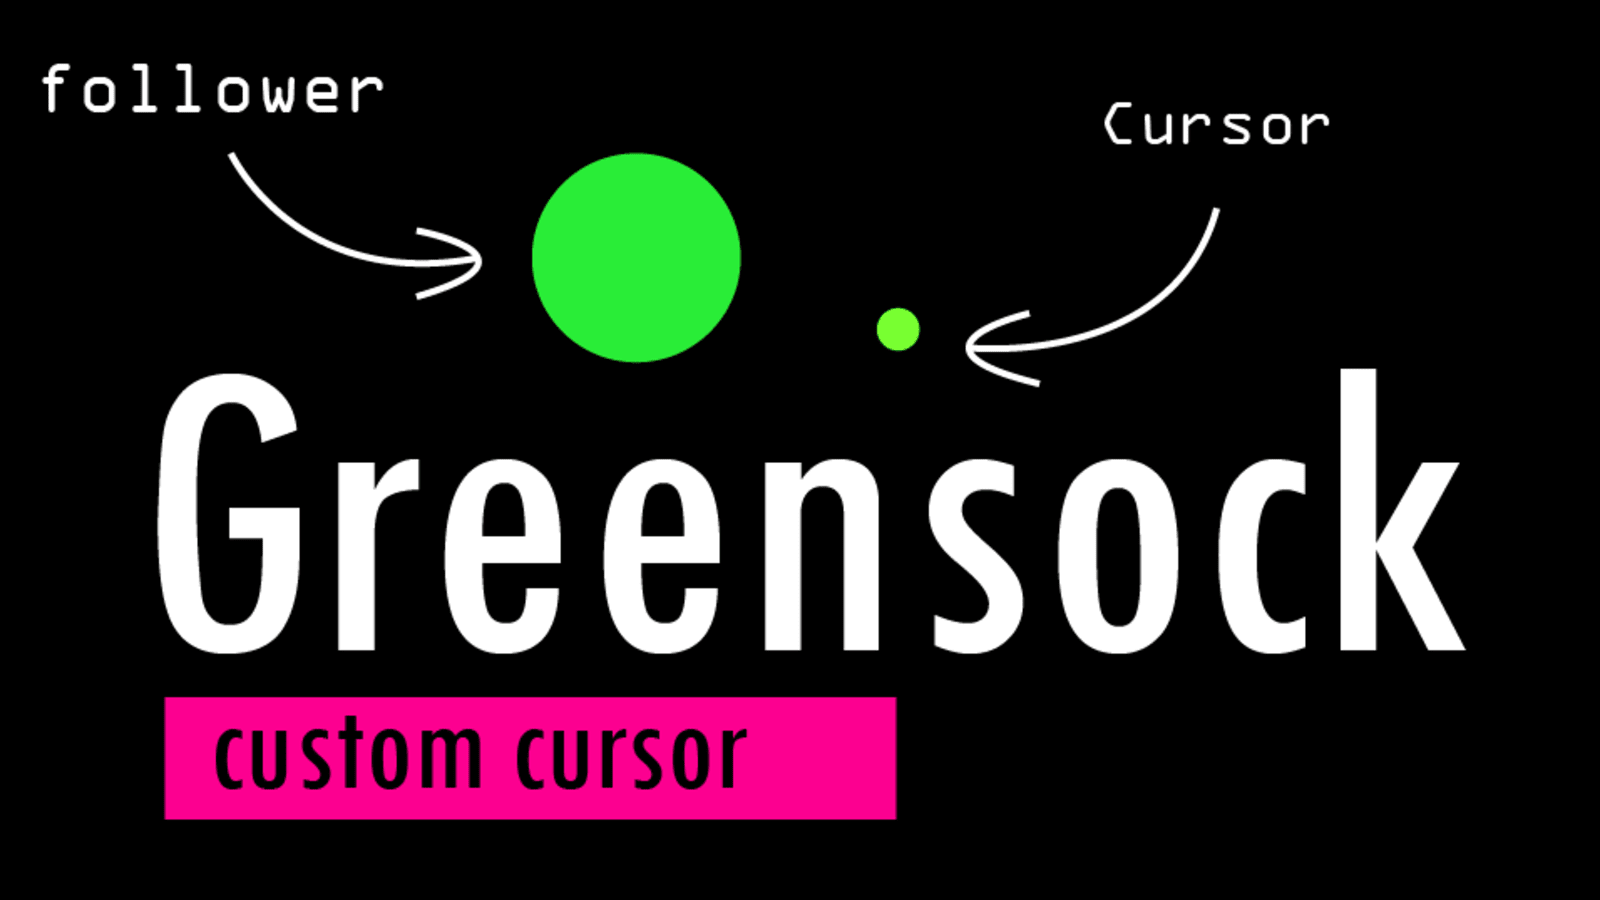 Custom Cursor With Greensock Dev Community